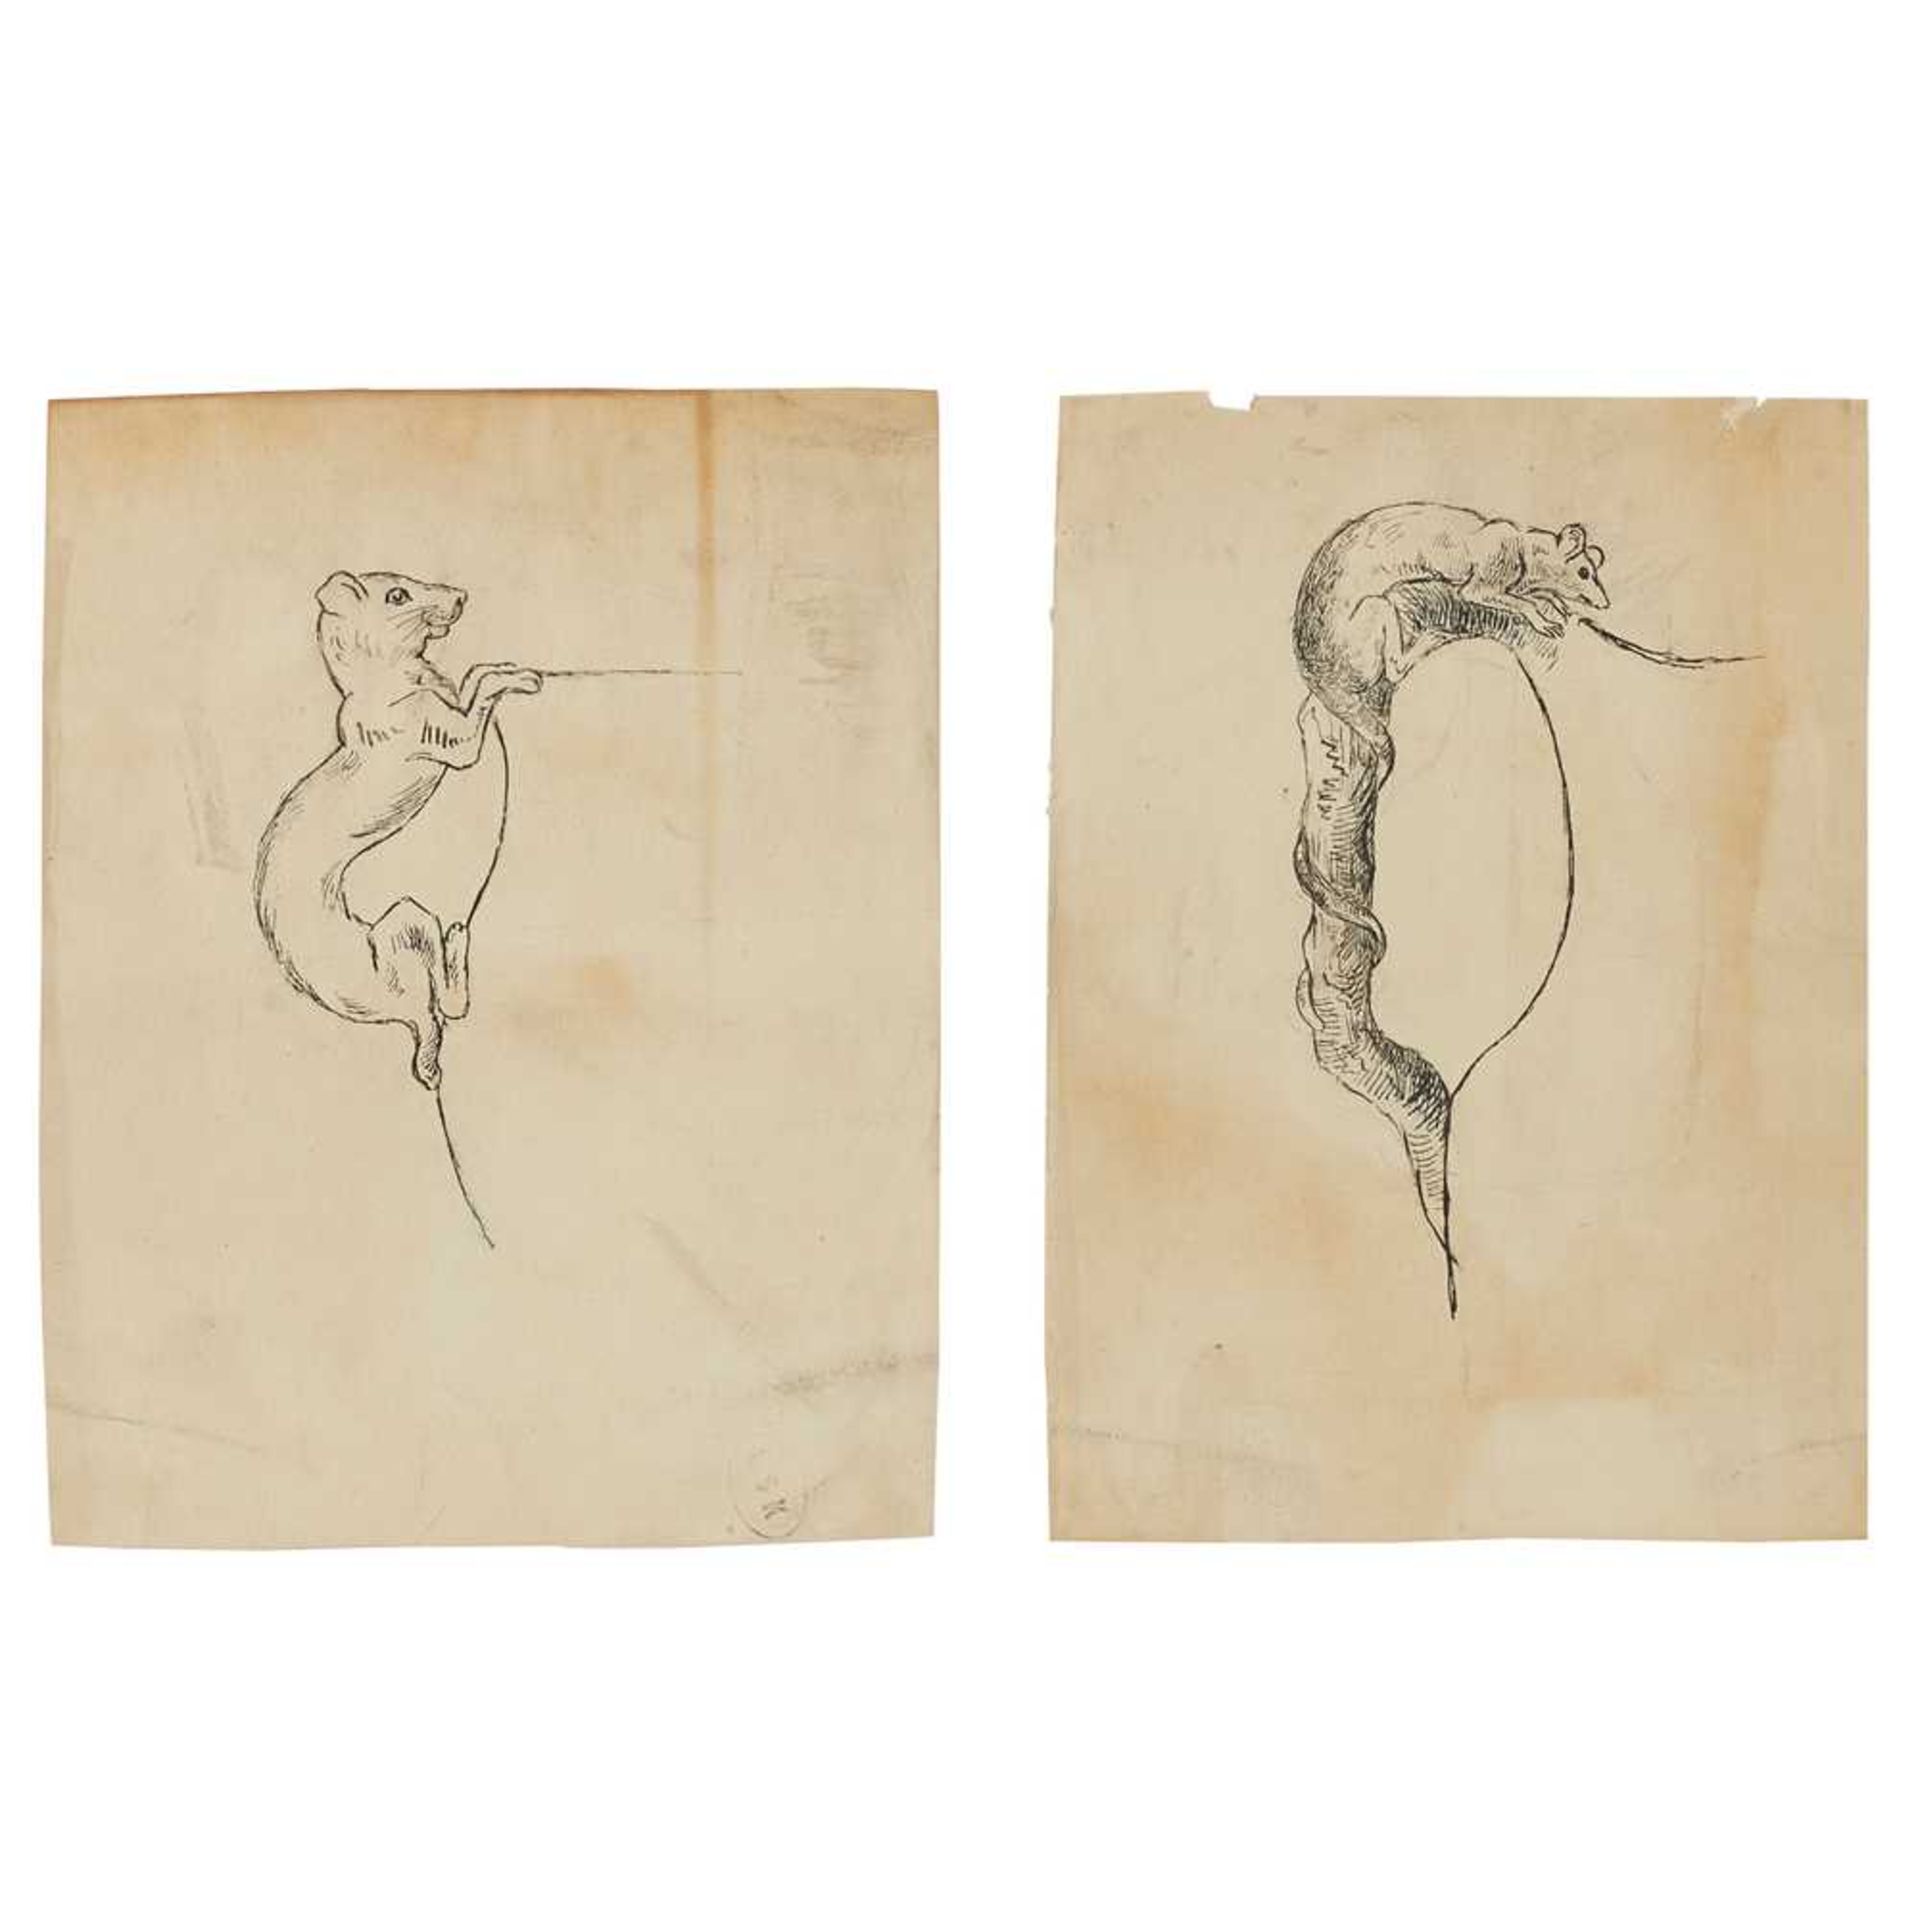 HANNAH BARLOW (1851-1916) DESIGNS FOR A ‘DOG’ JUG HANDLE AND A ‘CAT’ JUG HANDLE, CIRCA 1870 - Image 4 of 15